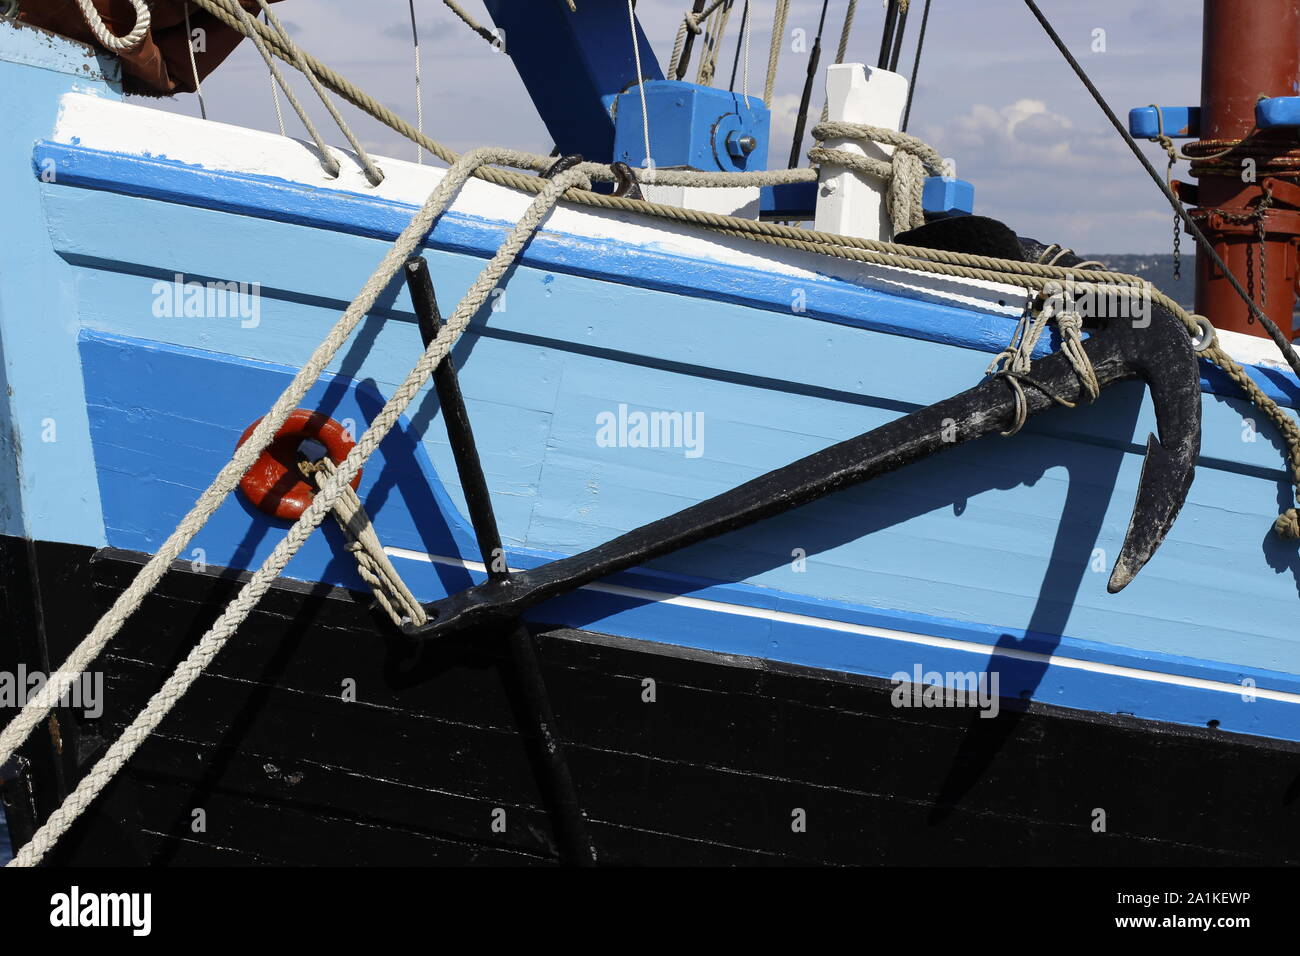 Détail d'un grand bateau de pêche en bois bleu montrant gréement, mât et l'ancre Banque D'Images